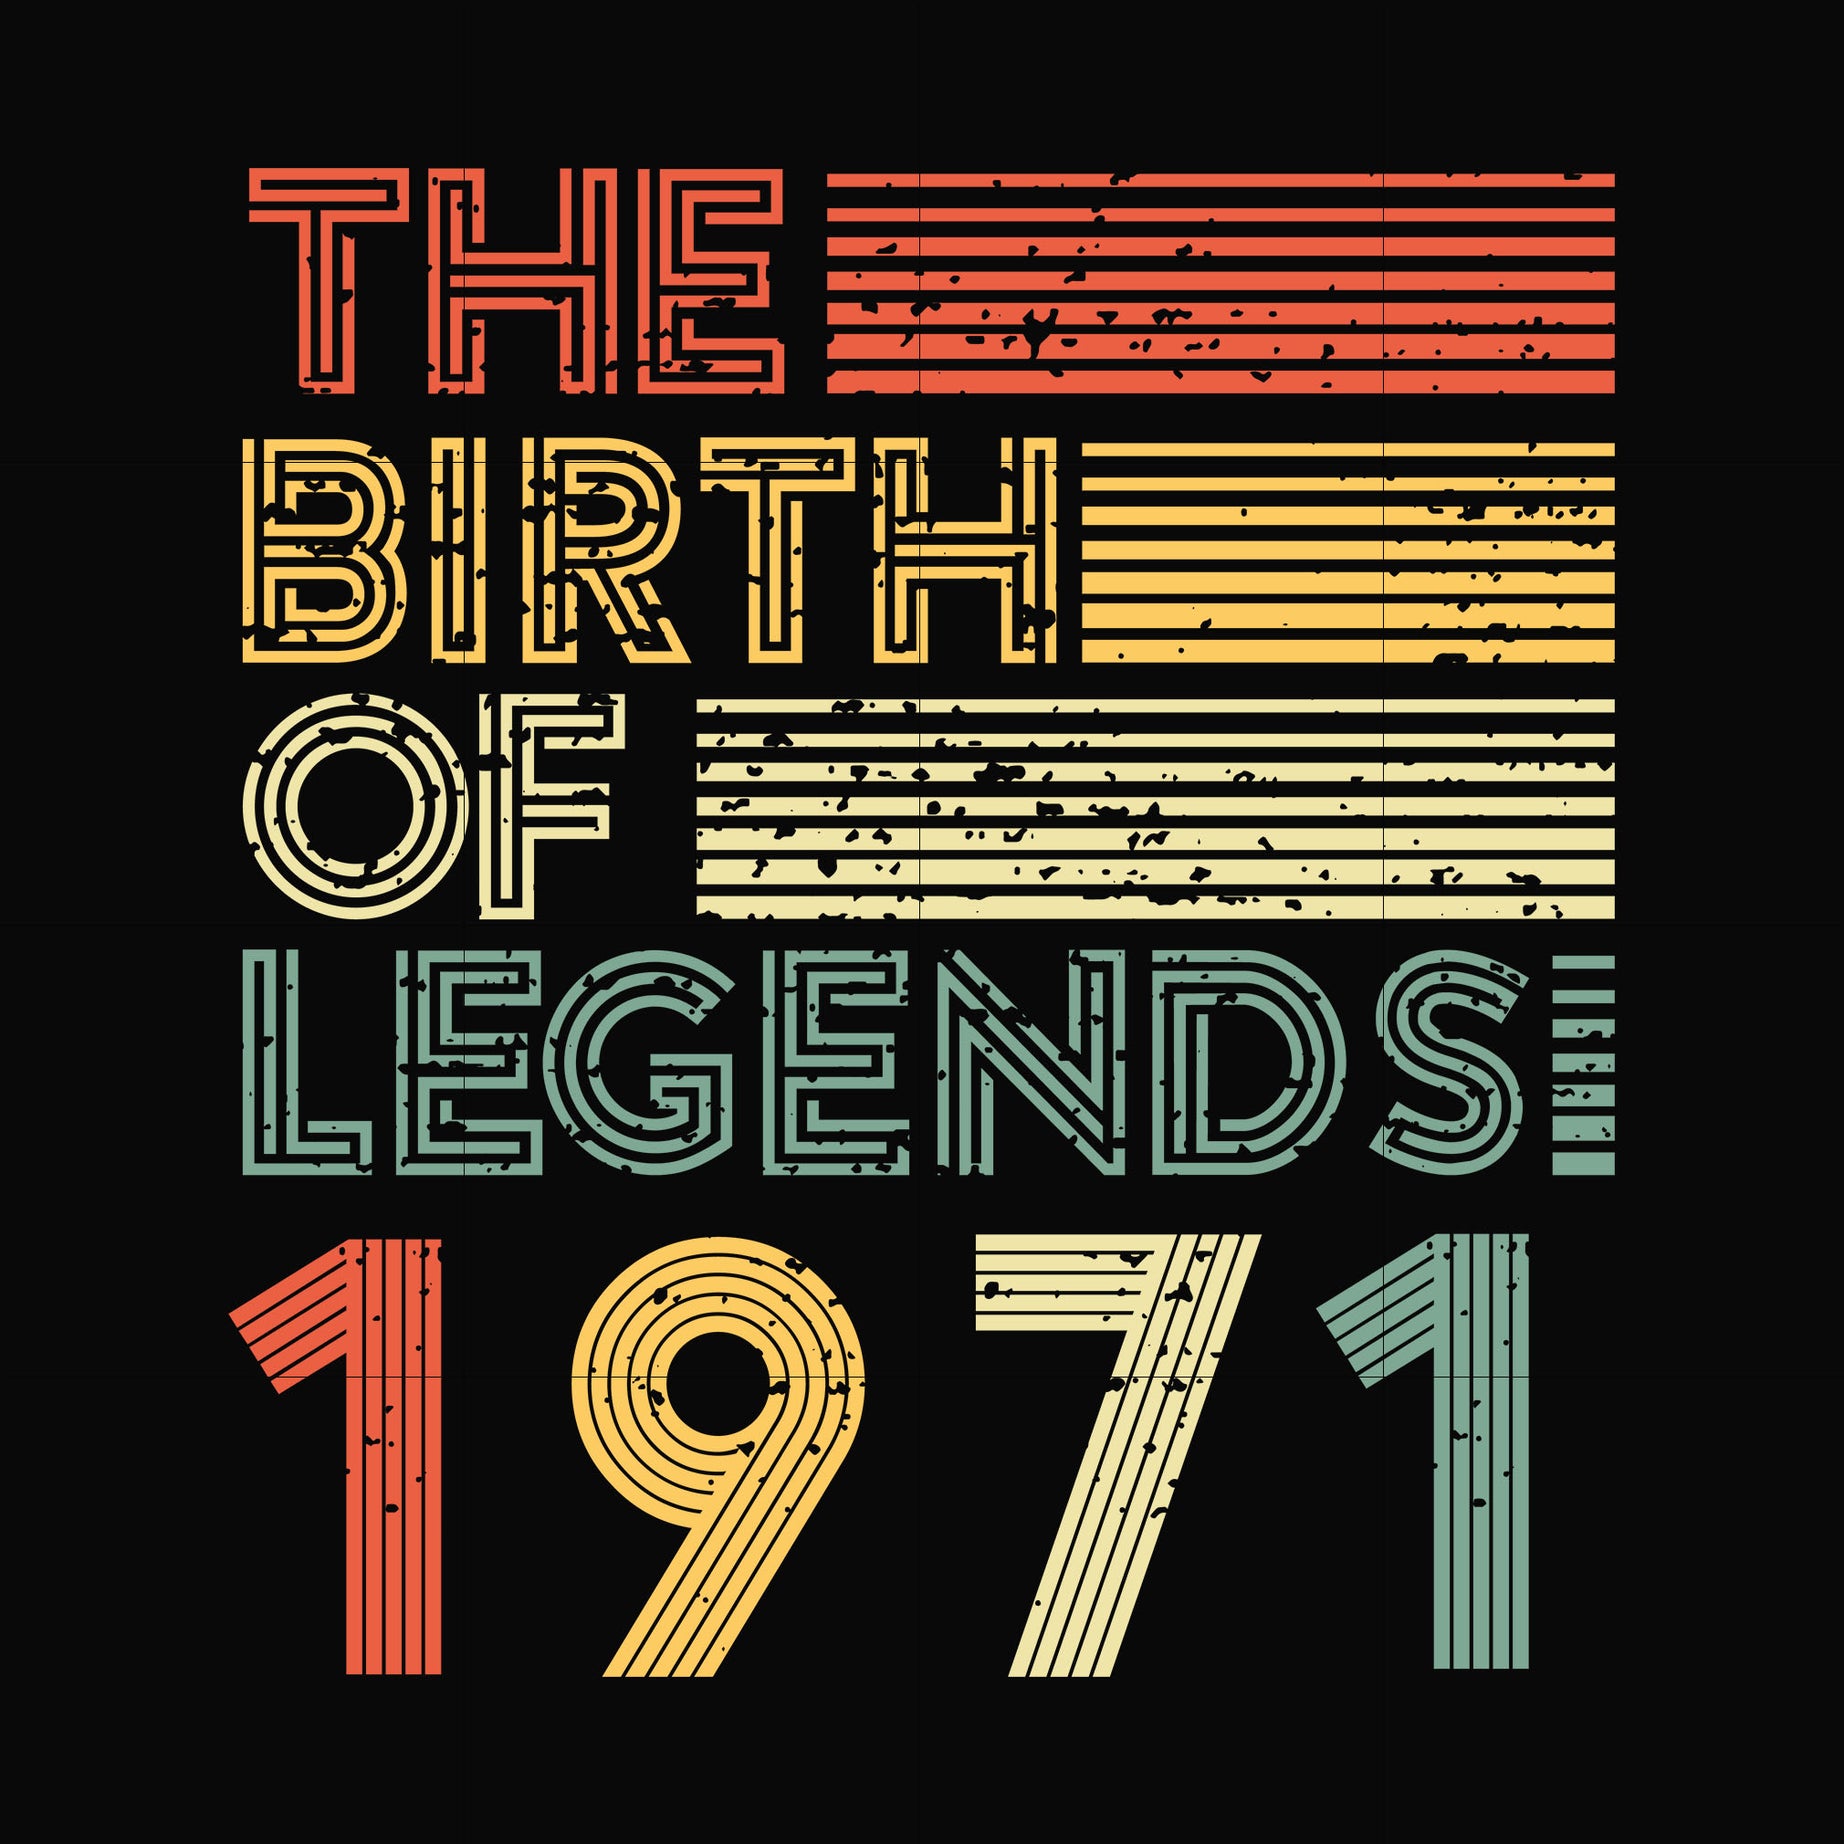 The birth of legends 1971 svg, png, dxf, eps digital file NBD0073